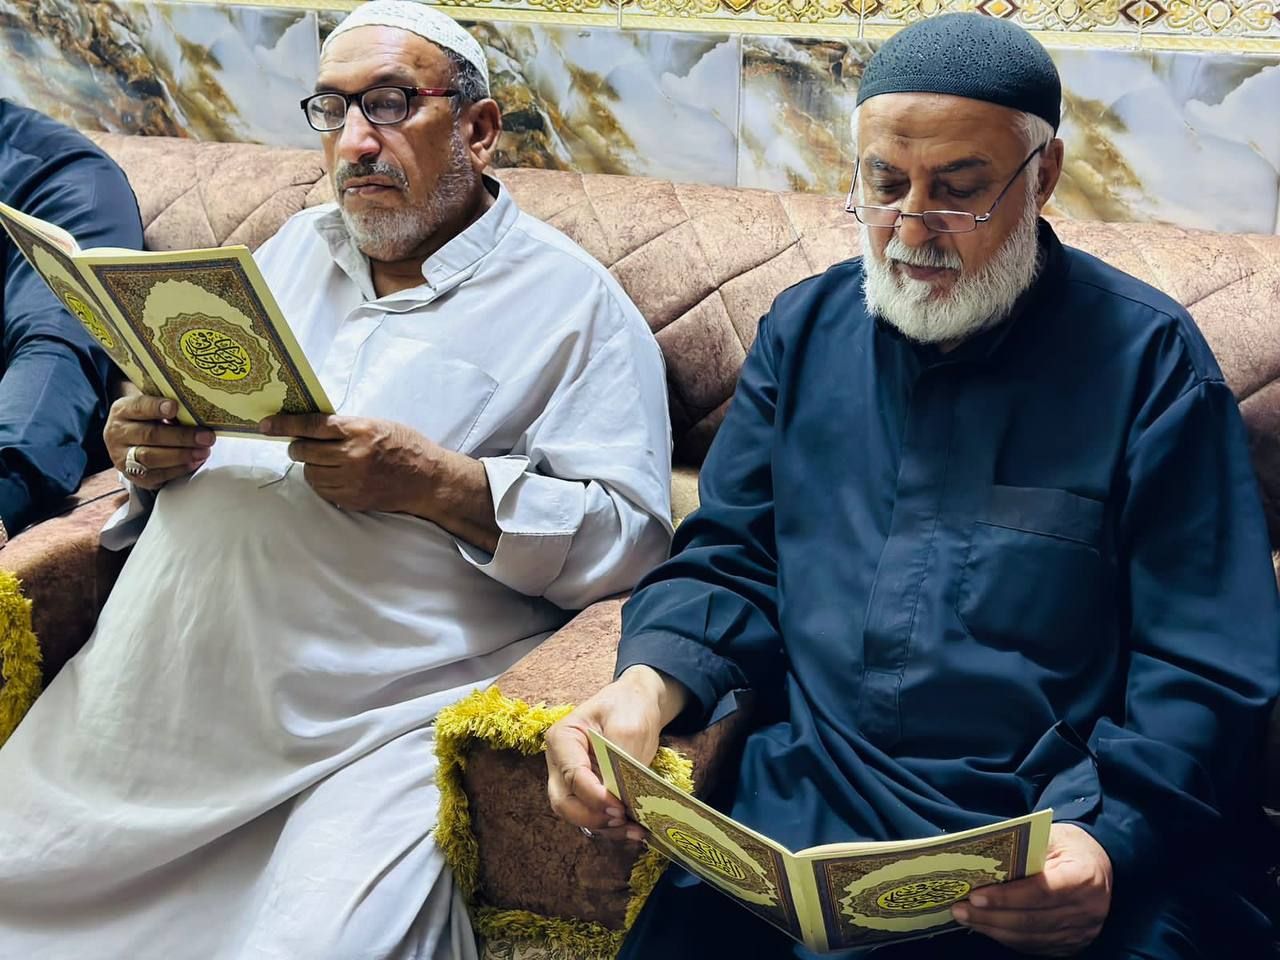 معهد القرآن الكريم يقيم ختمة قرآنية مرتلة في بغداد